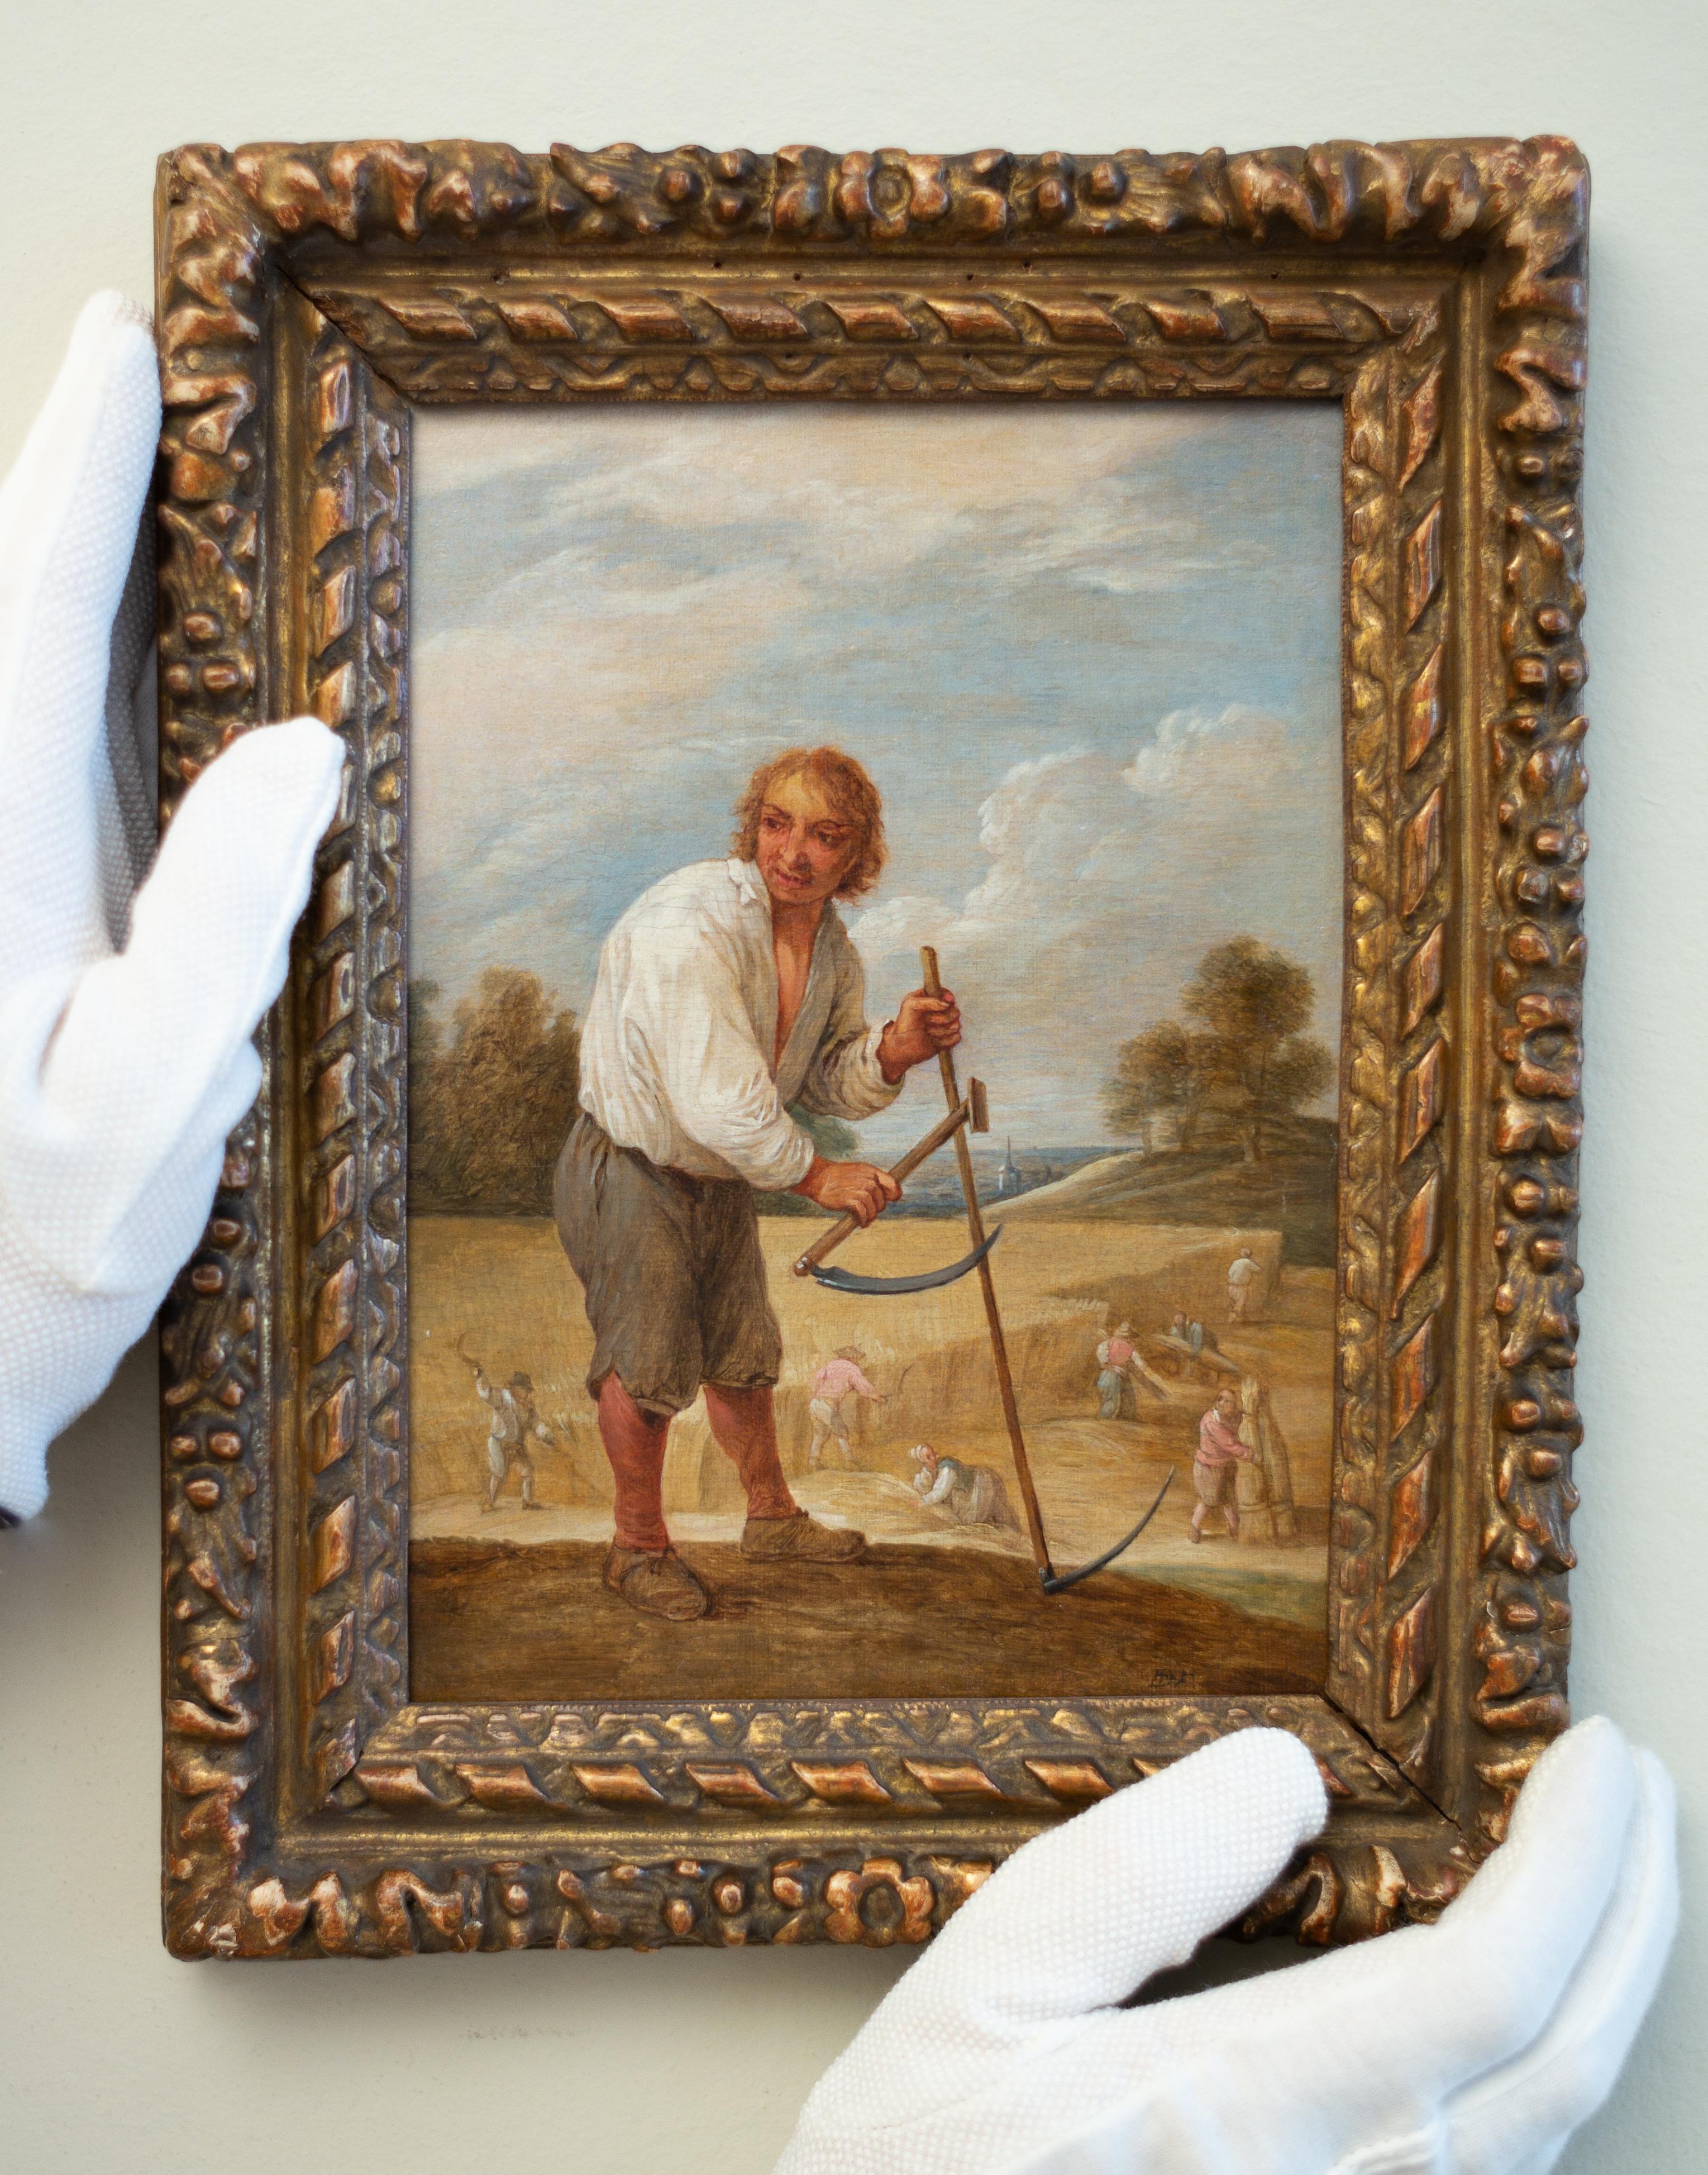 Se souvenir de la magie des moments de la vie quotidienne dans l'art de David Teniers :

L'art de David Teniers le Jeune (1610-1690) coïncide avec l'apogée du baroque flamand et capture une grande variété de motifs de son époque. Dans cette peinture